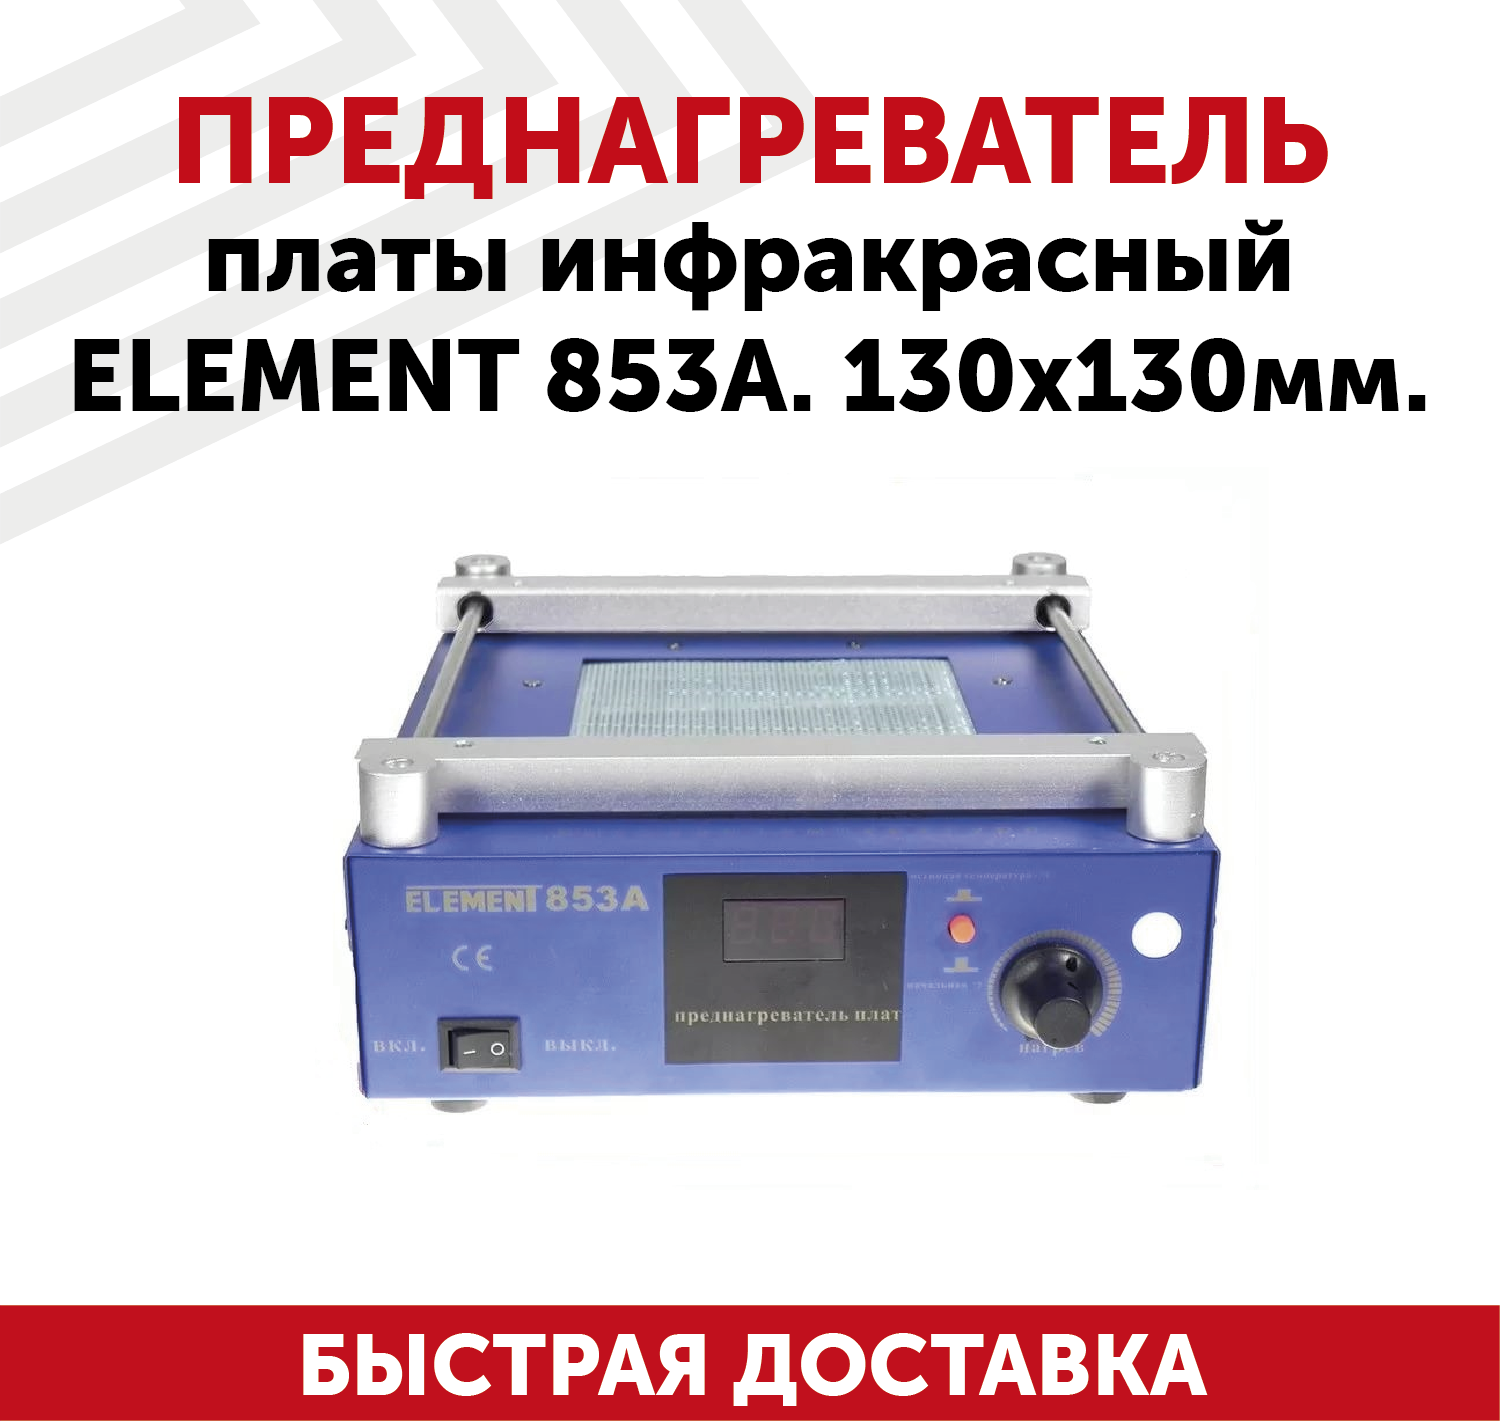 Преднагреватель платы инфракрасный Element 853A 130x130мм